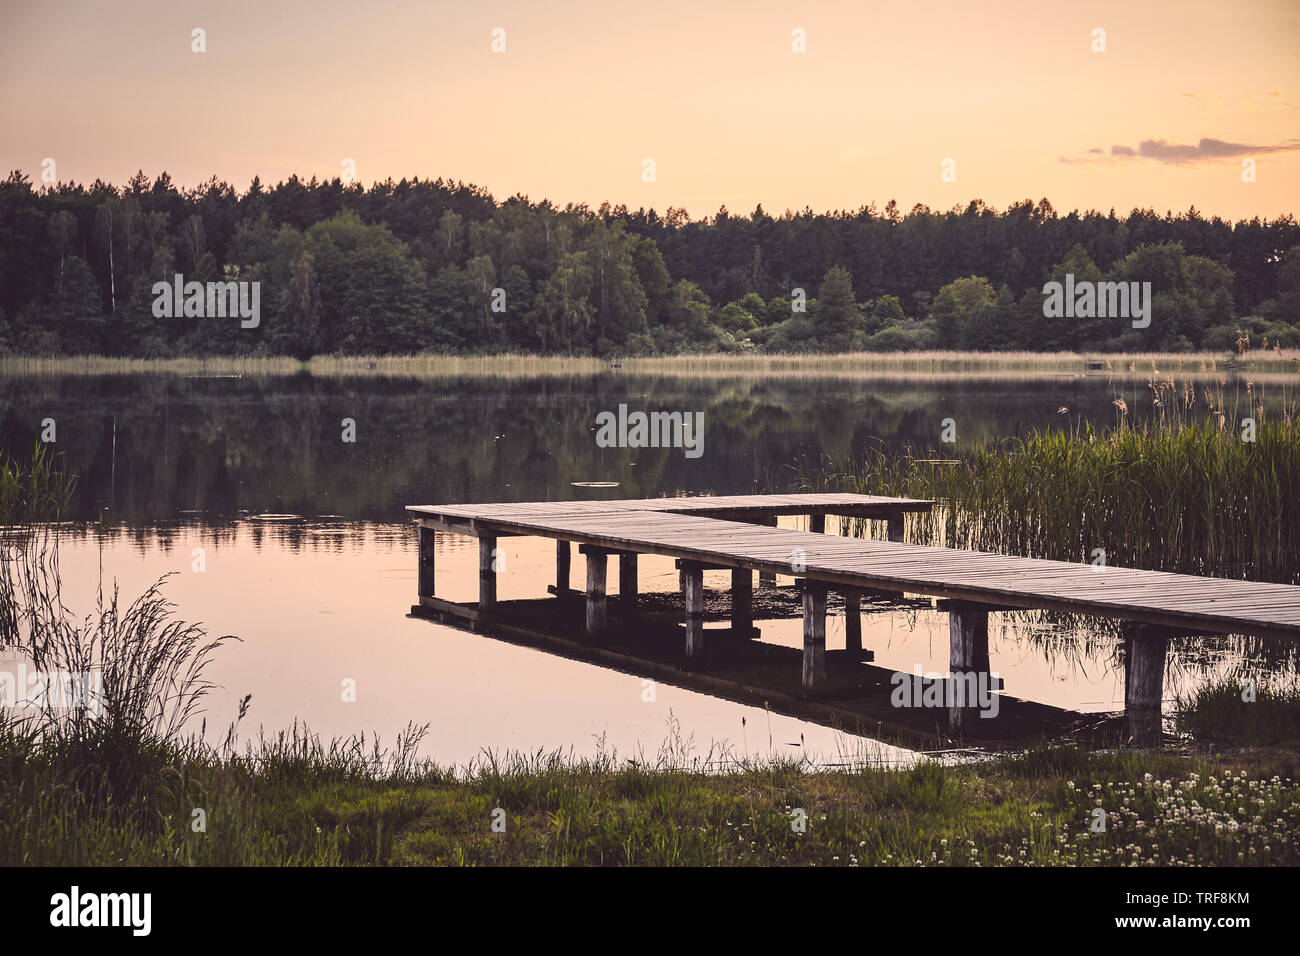 Il molo di legno in corrispondenza di un lago calmo al tramonto, tonificazione del colore applicato. Foto Stock